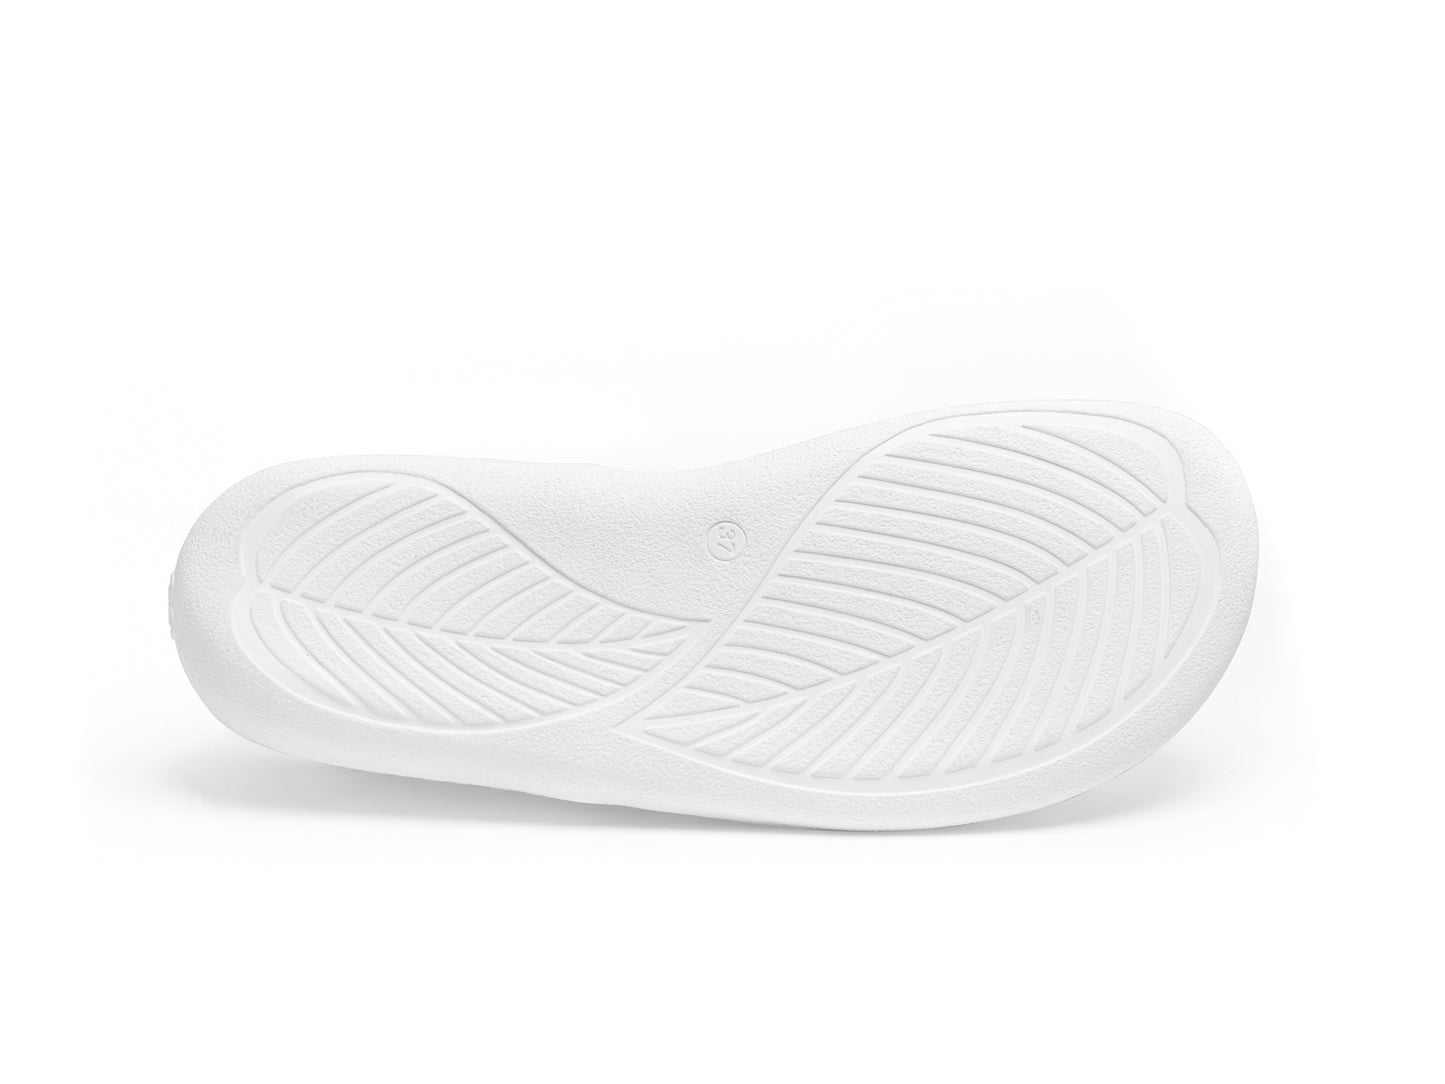 Barefoot Sneakers - Be Lenka Eazy - White-Be Lenka-Cacles Barefoot